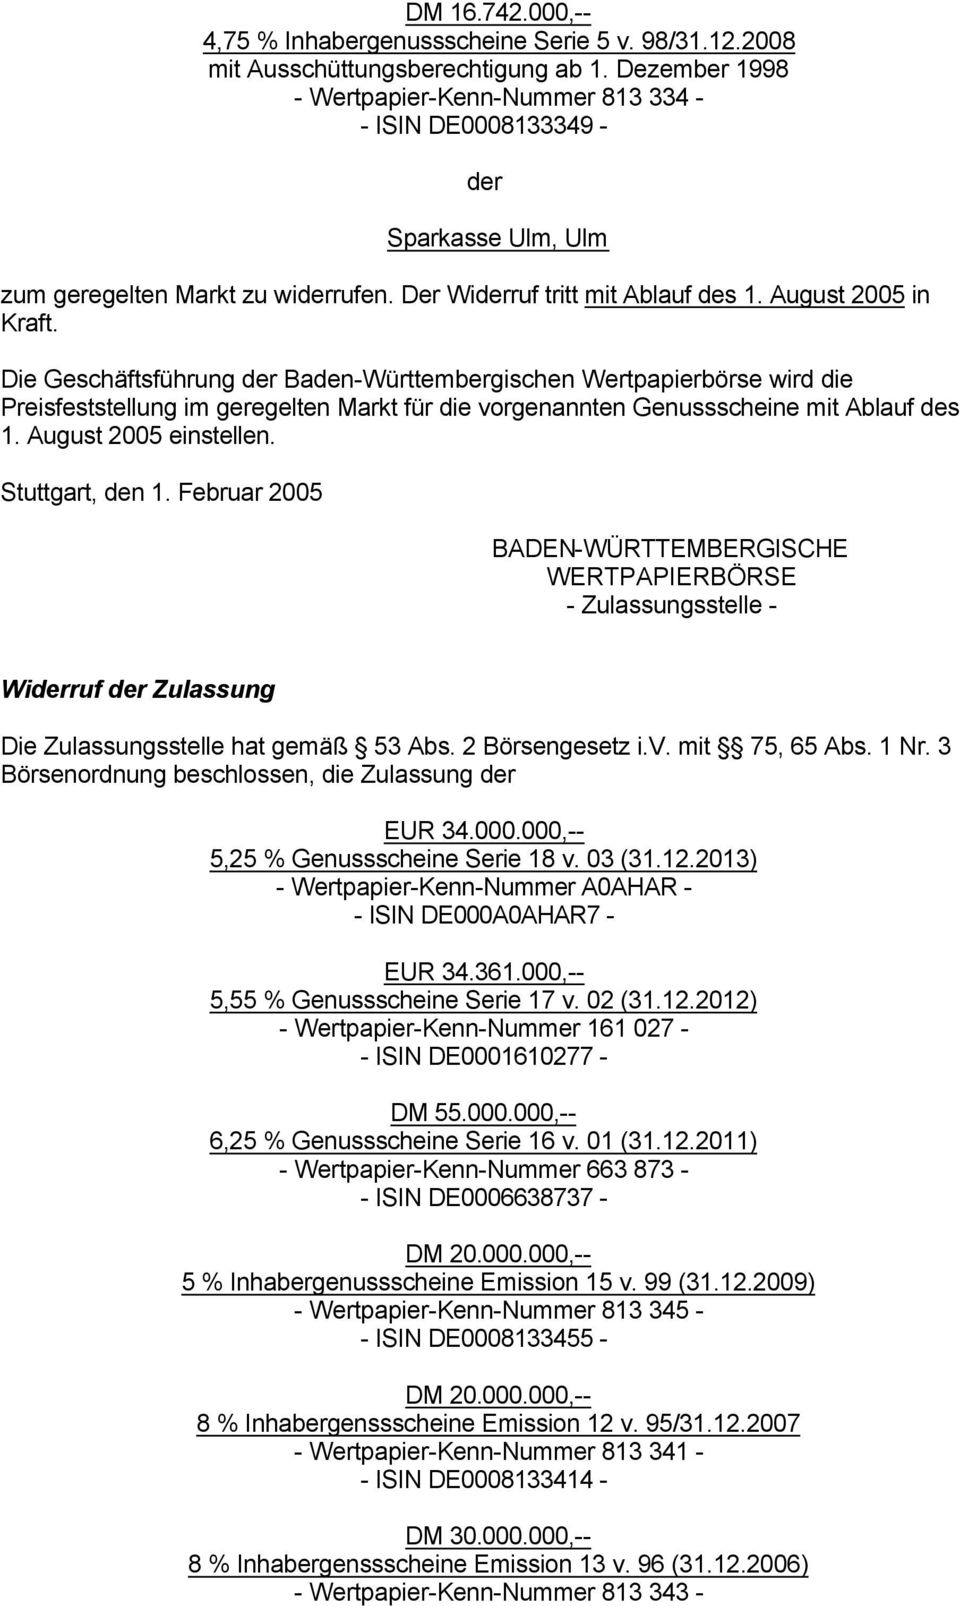 Die Geschäftsführung Baden-Württembergischen Wertpapierbörse wird die Preisfeststellung im geregelten Markt für die vorgenannten Genussscheine mit Ablauf des 1. August 2005 einstellen.